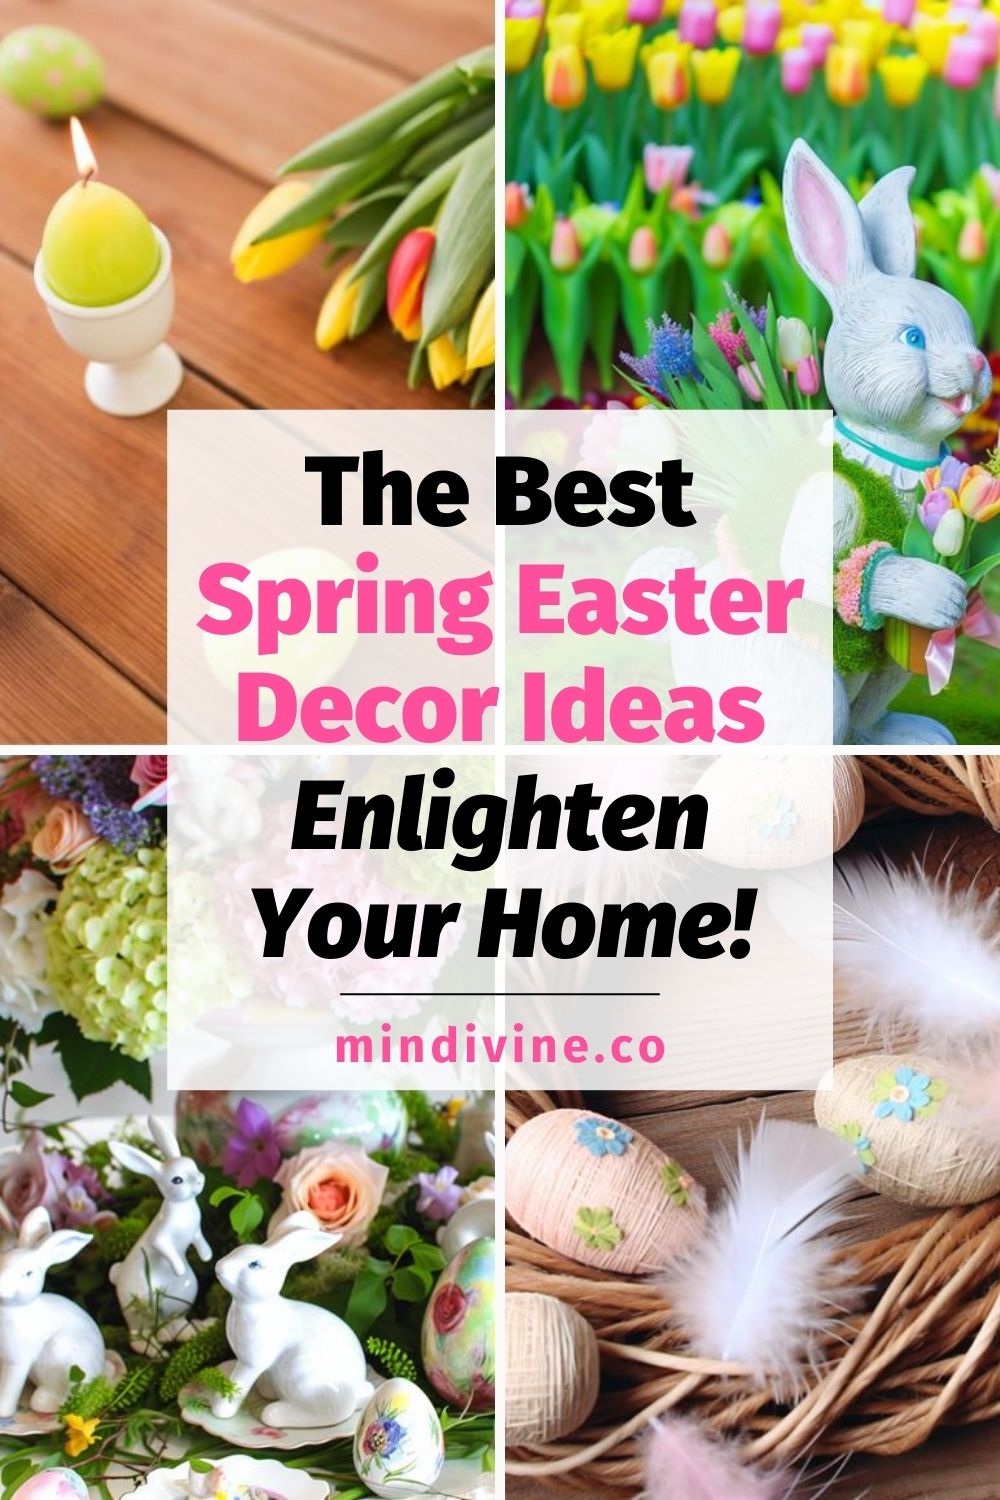 4 gorgeous spring Easter decor ideas